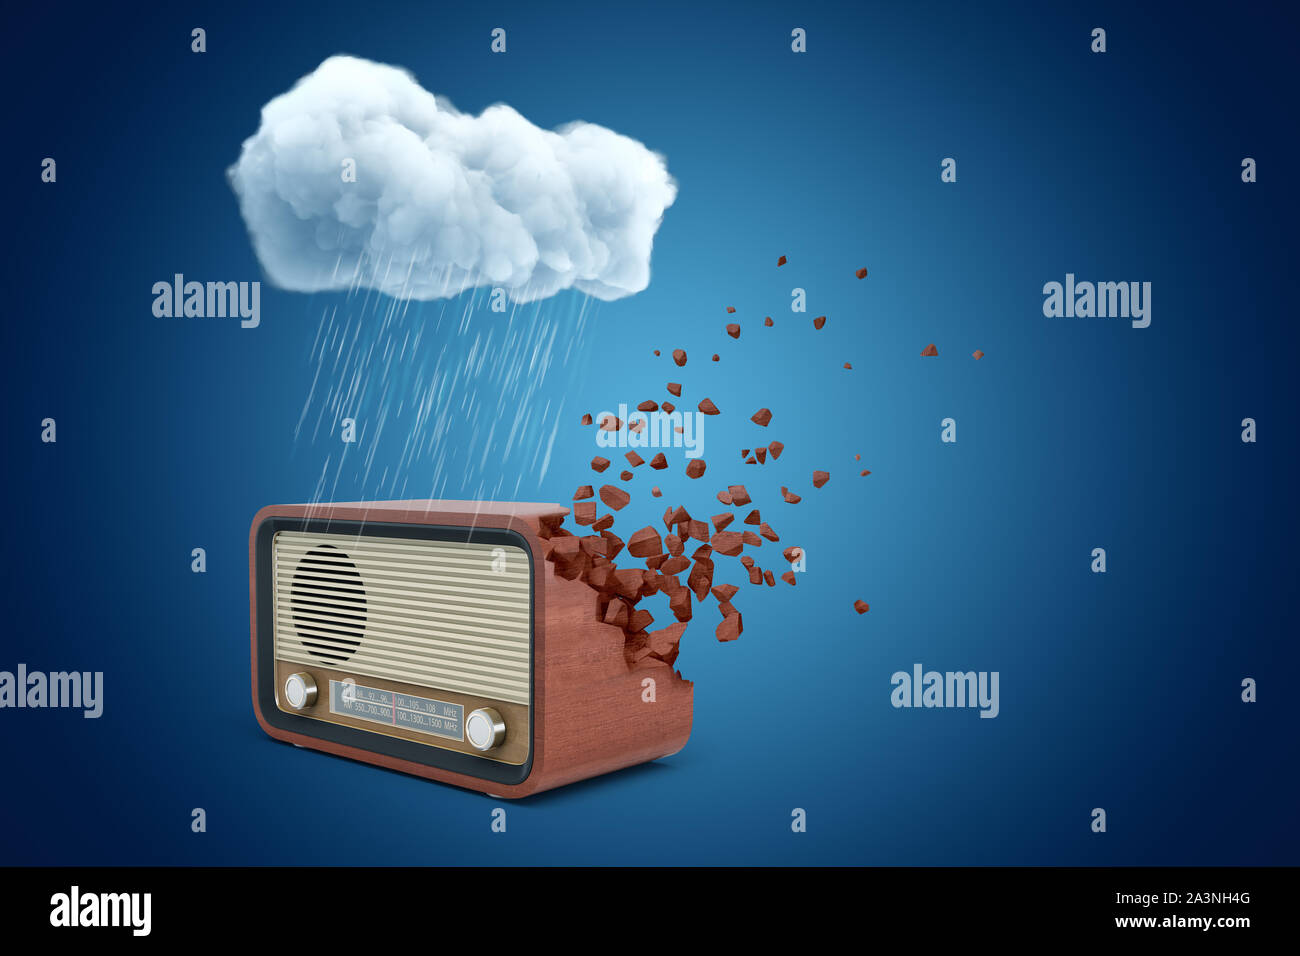 Le rendu 3d du jeu de radio marron dissolvant en morceaux d'un côté, en vertu de l'article nuage de pluie sur fond bleu. Banque D'Images